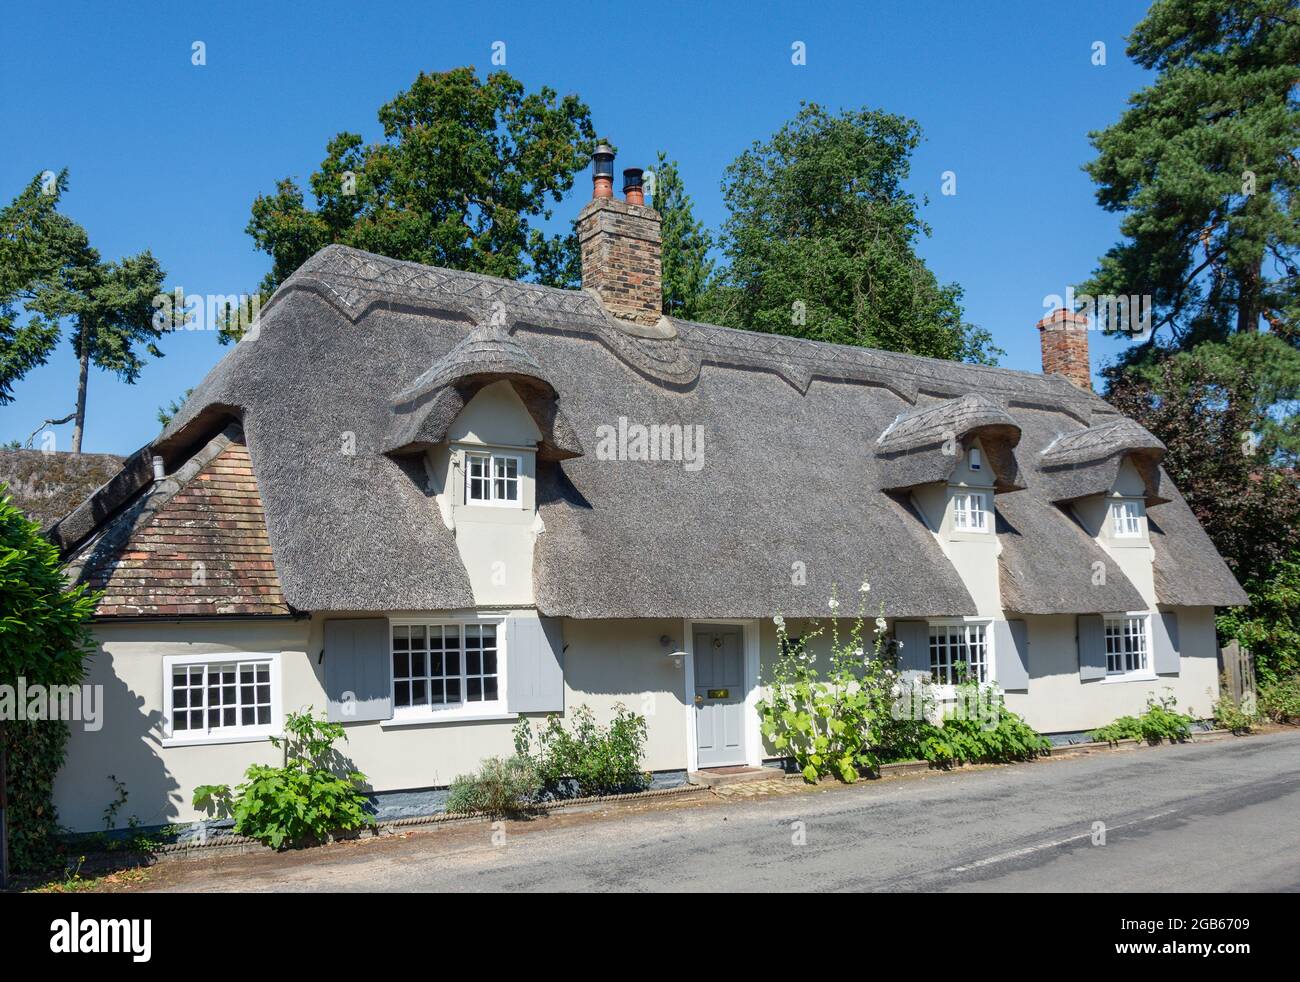 Maison de chaume, Hemingford Abbots, Cambridgeshire, Angleterre, Royaume-Uni Banque D'Images